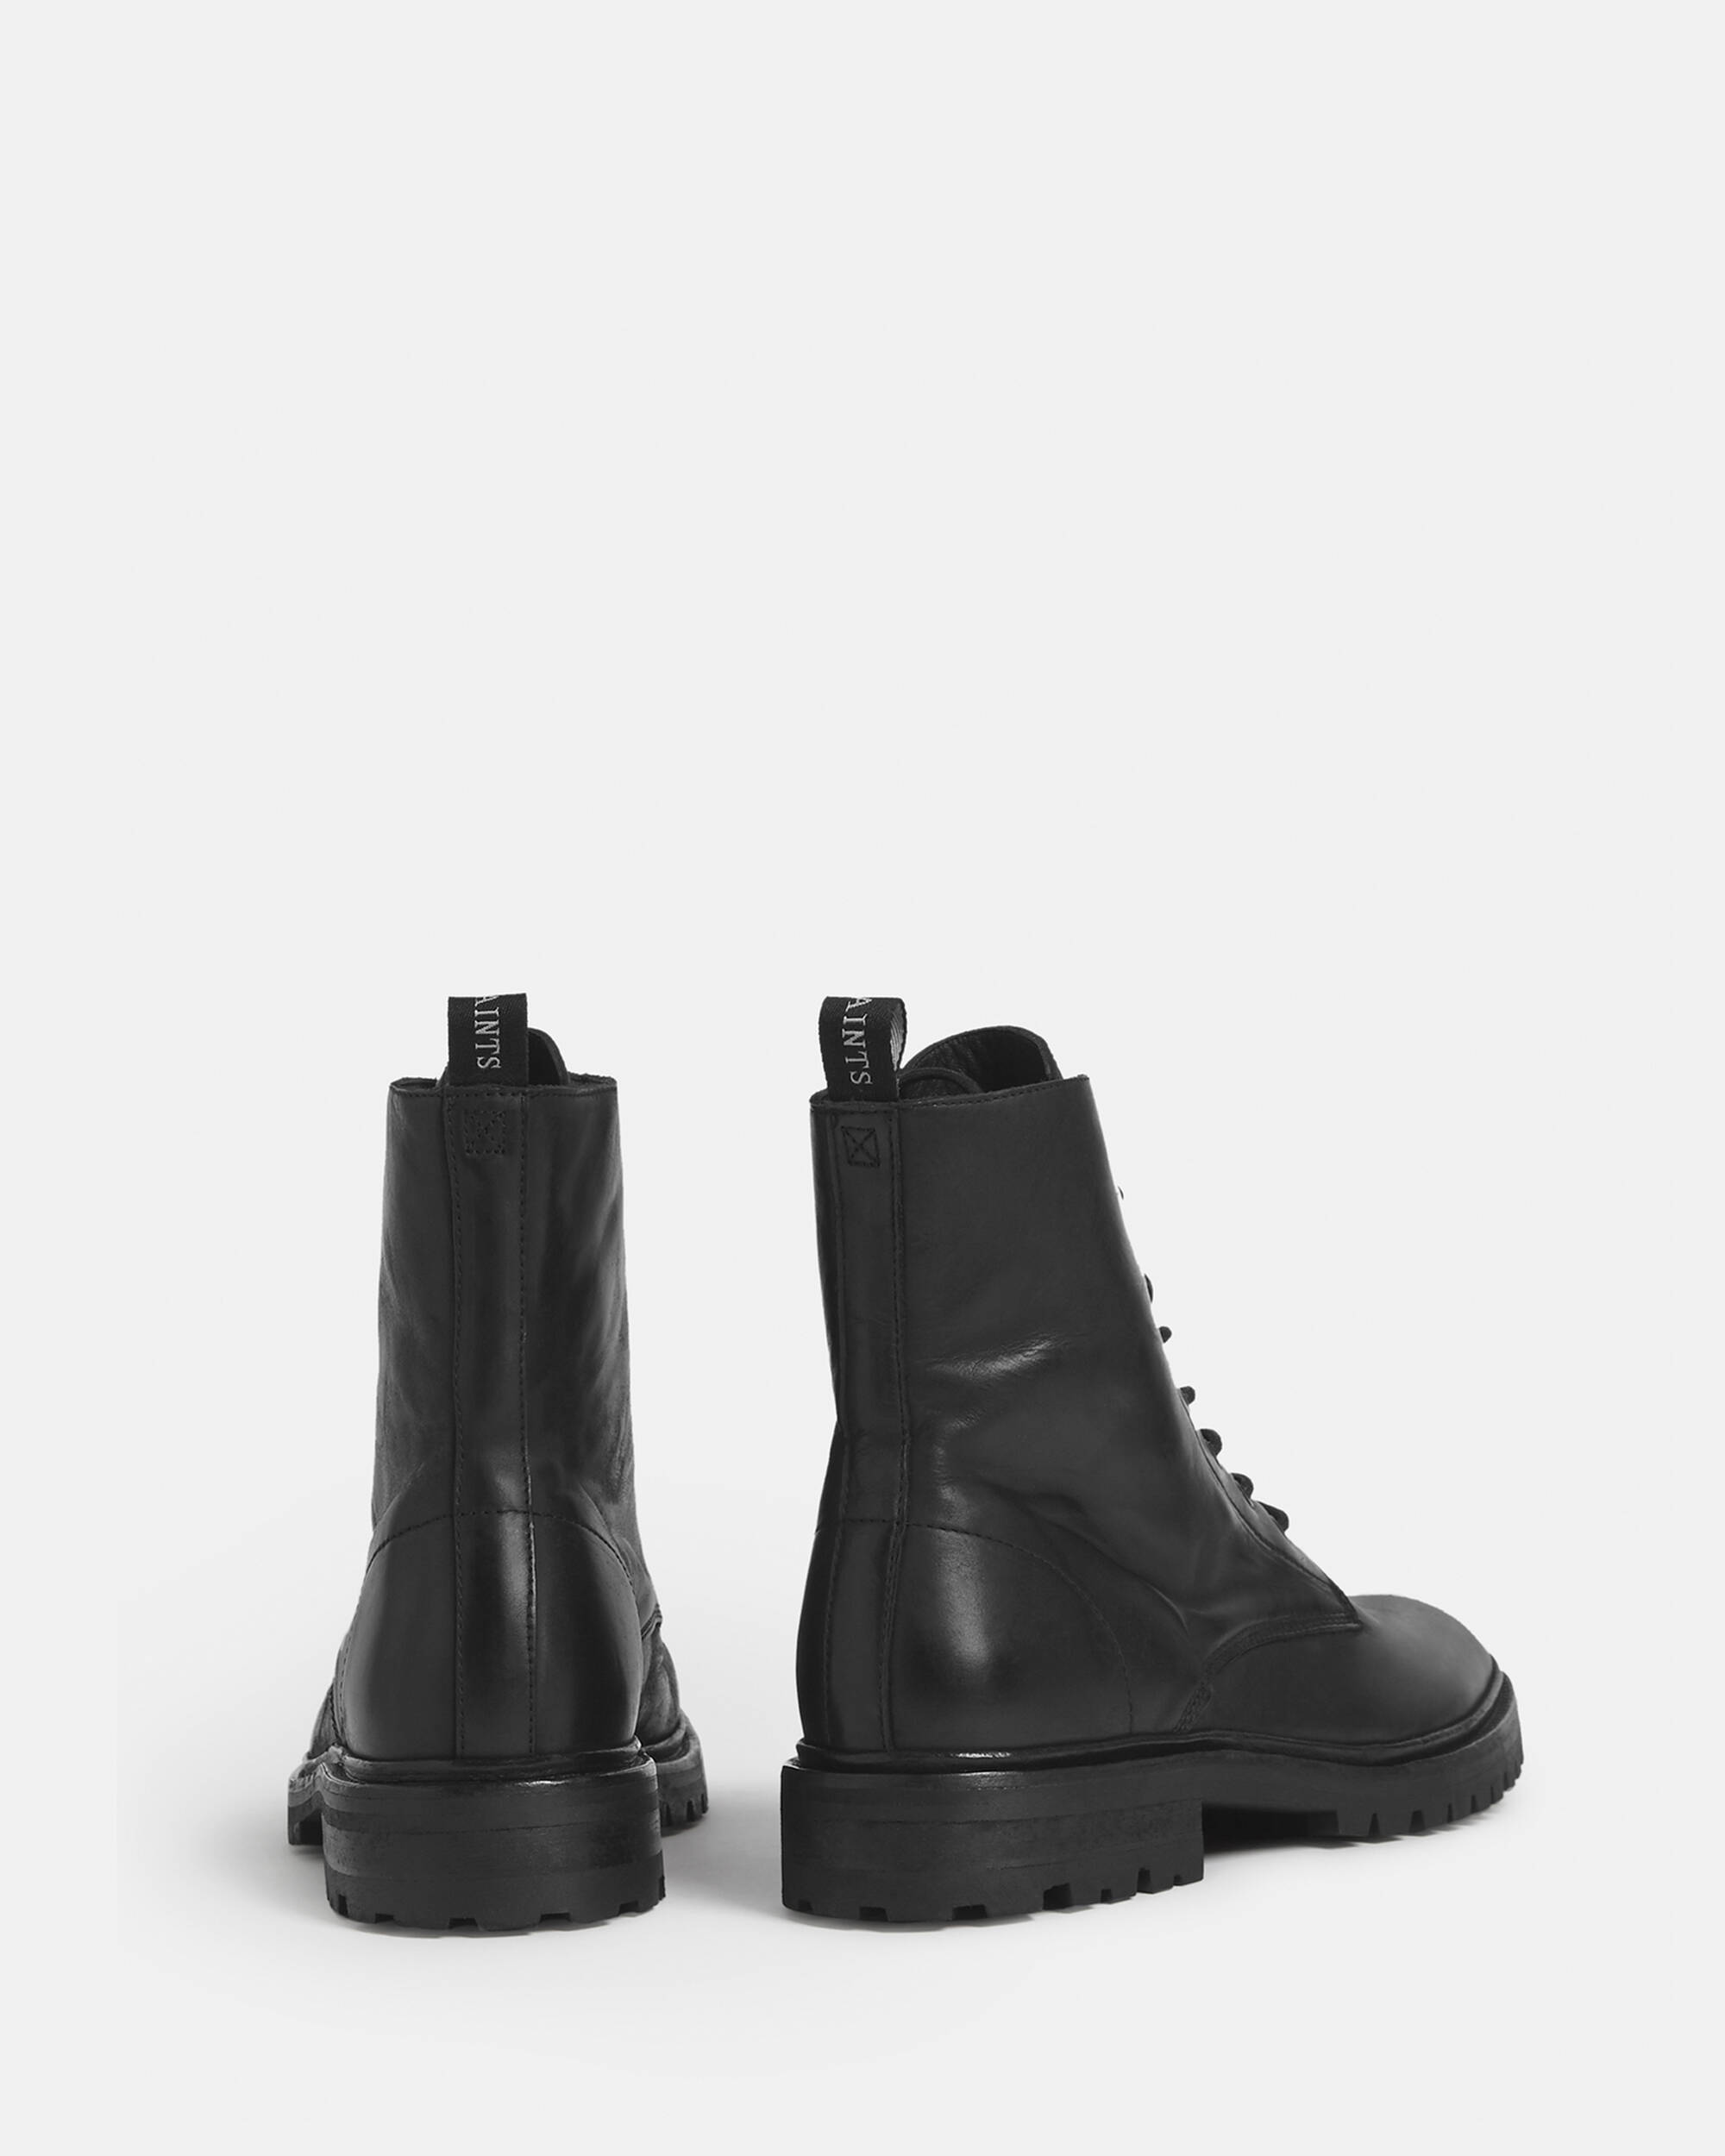 Tobias Leather Boots Black | ALLSAINTS US